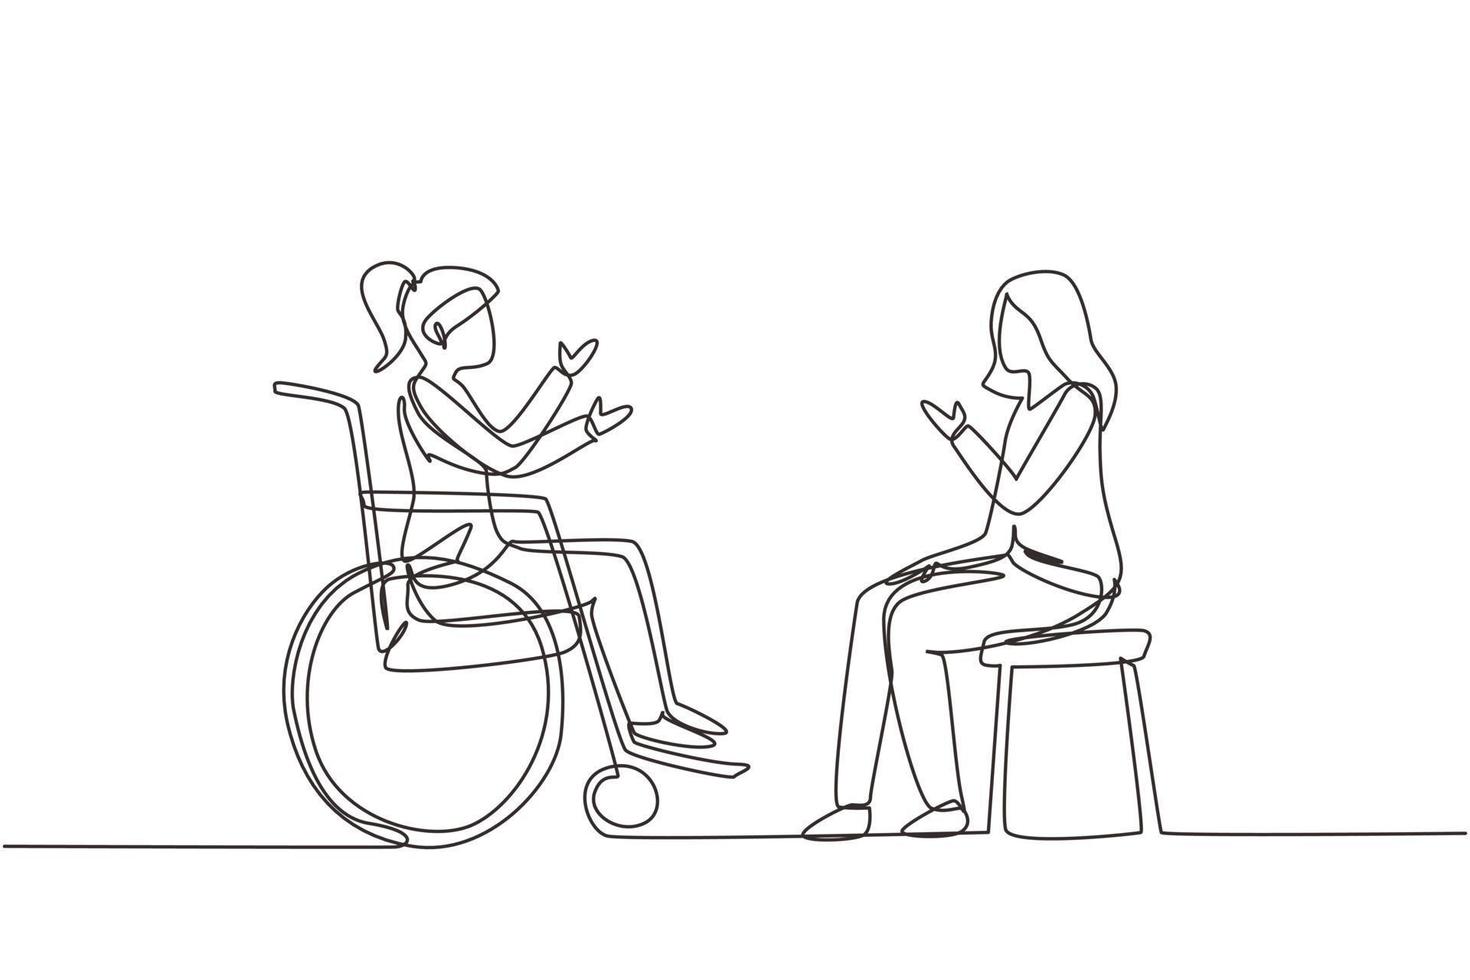 einzelne eine Linie, die zwei Personen zeichnet, die sich unterhalten, einer mit einem Stuhl und einer mit einem Rollstuhl. freundliche frau redet miteinander, mensch behinderte gesellschaft. Designvektor mit durchgehender Linie vektor